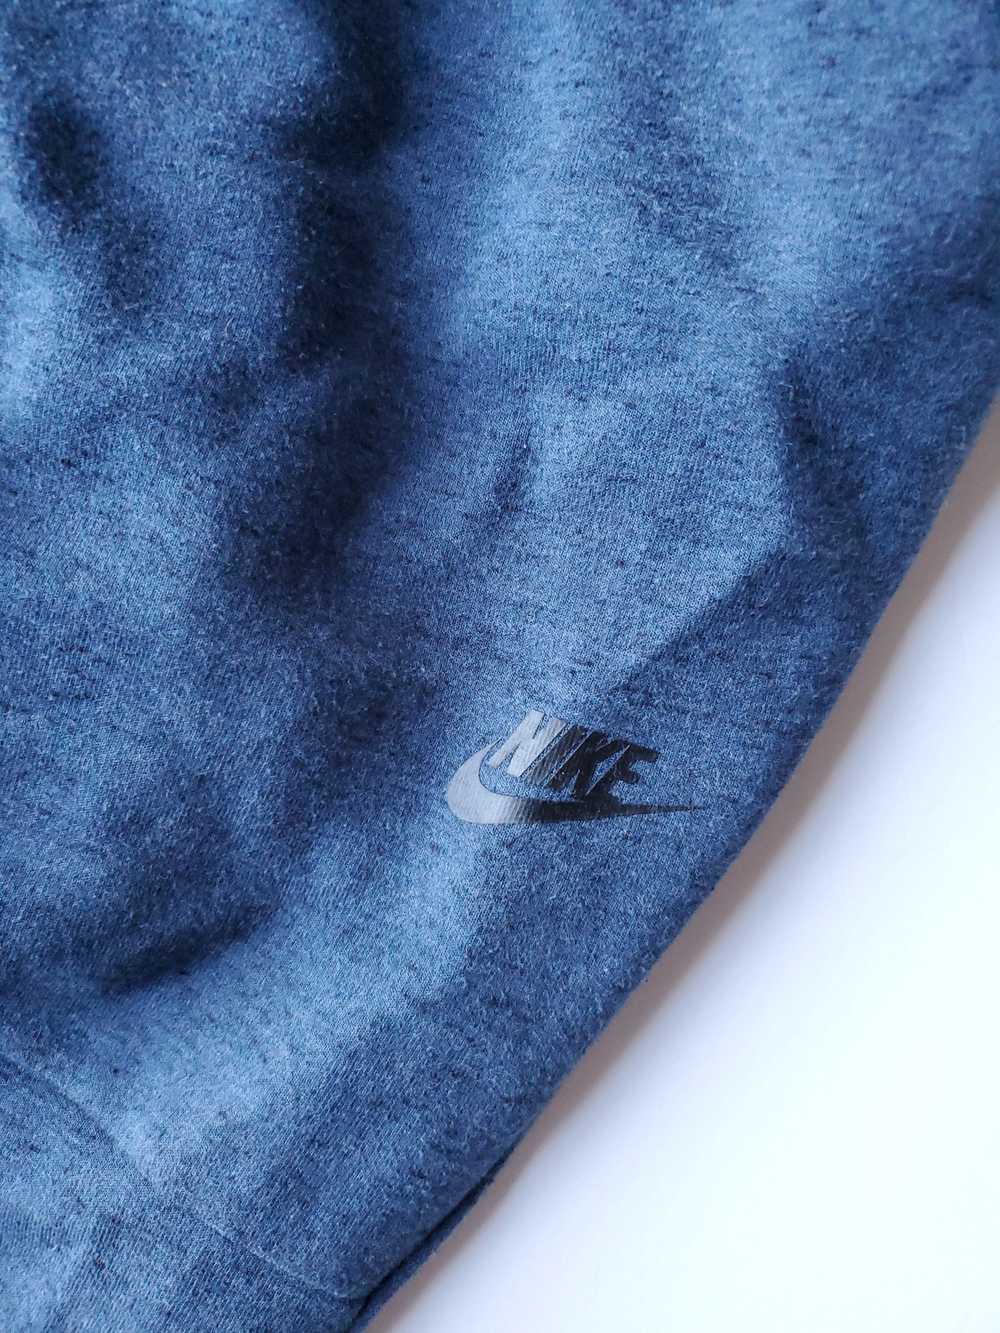 Nike Nike Sportswear Tech Fleece Blue Pants Sz Me… - image 6